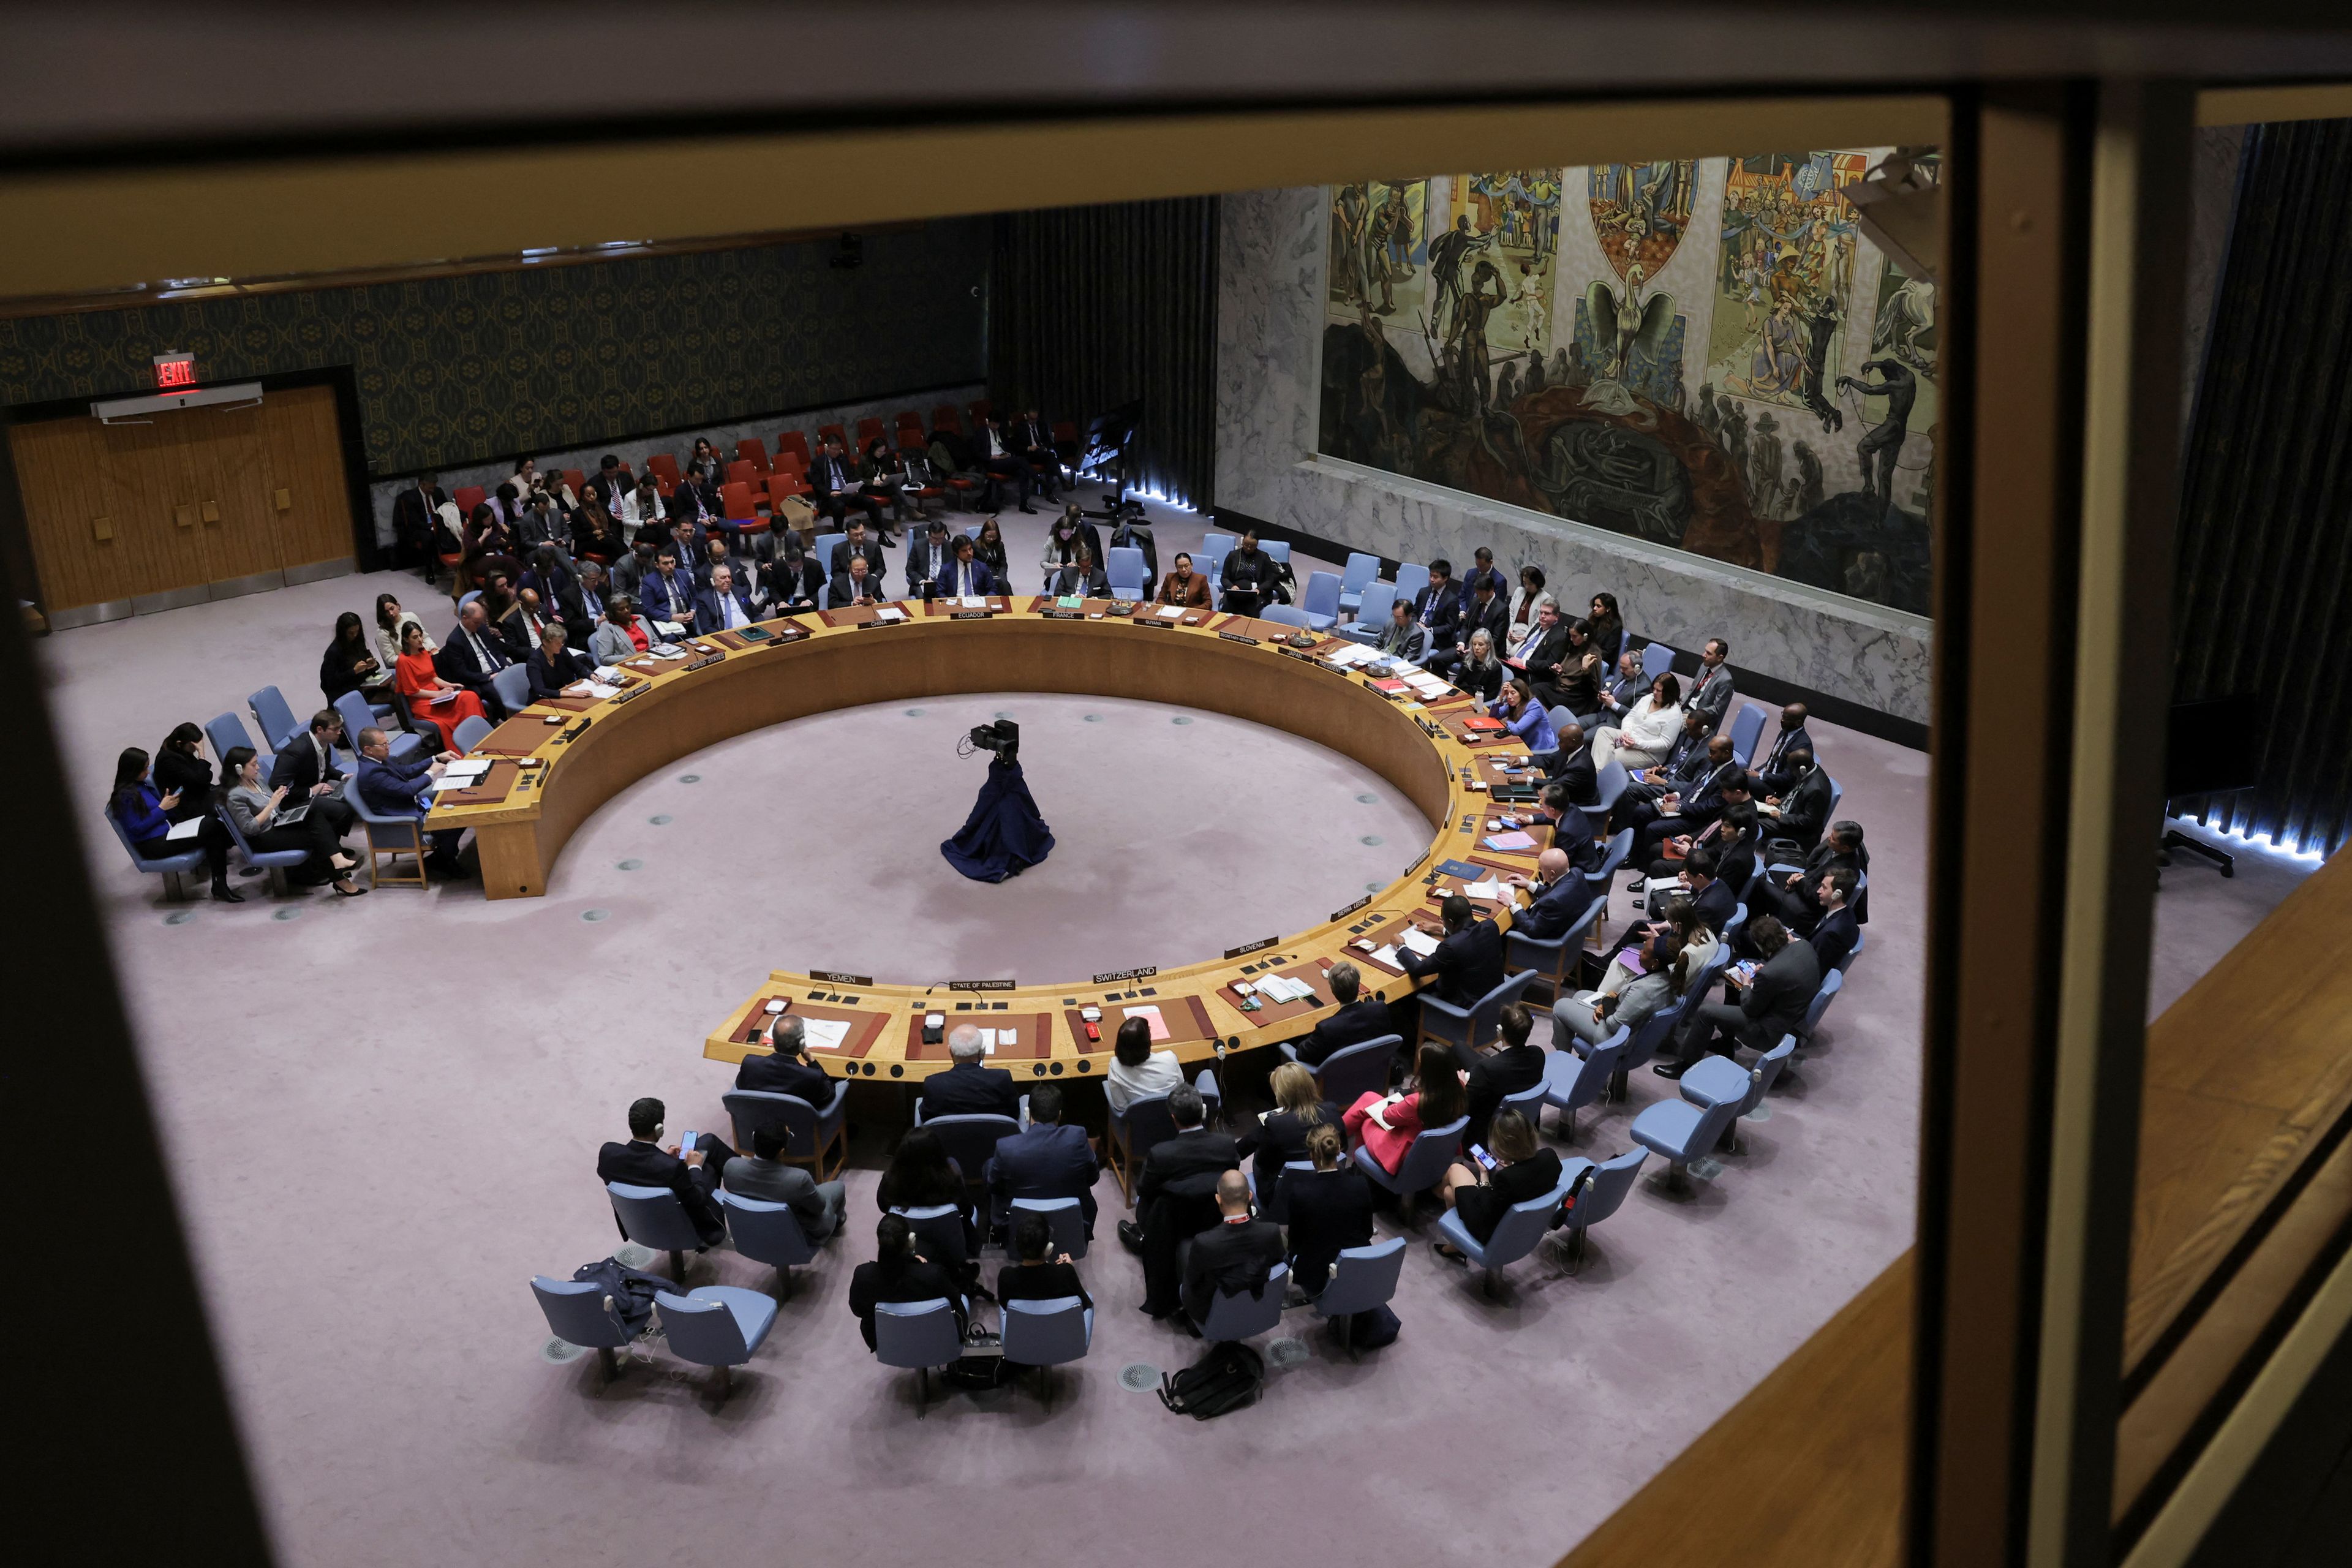 La foto del día: El Consejo de Seguridad de la ONU aprobó este lunes una resolución que por primera vez pide el alto el fuego en la guerra de Gaza gracias a la sorpresiva abstención de Estados Unidos, que había vetado propuestas similares anteriormente.